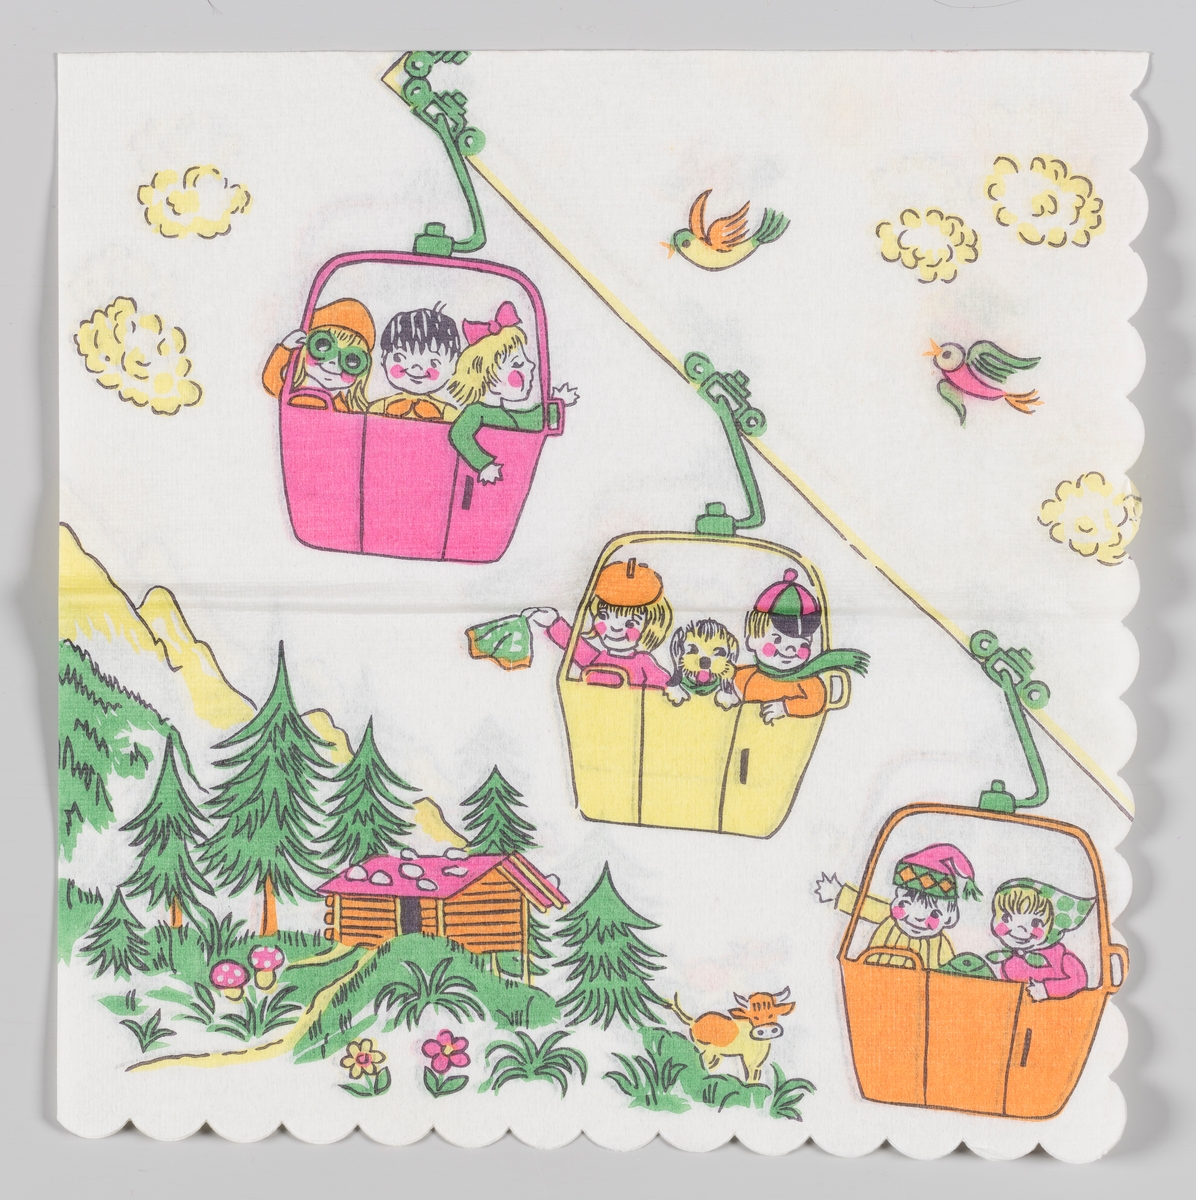 En gondolbane med tre gondoler med smilende barn. Fjell med et laftet hus, grantrær og blomster. Hvite skyer og fugler.